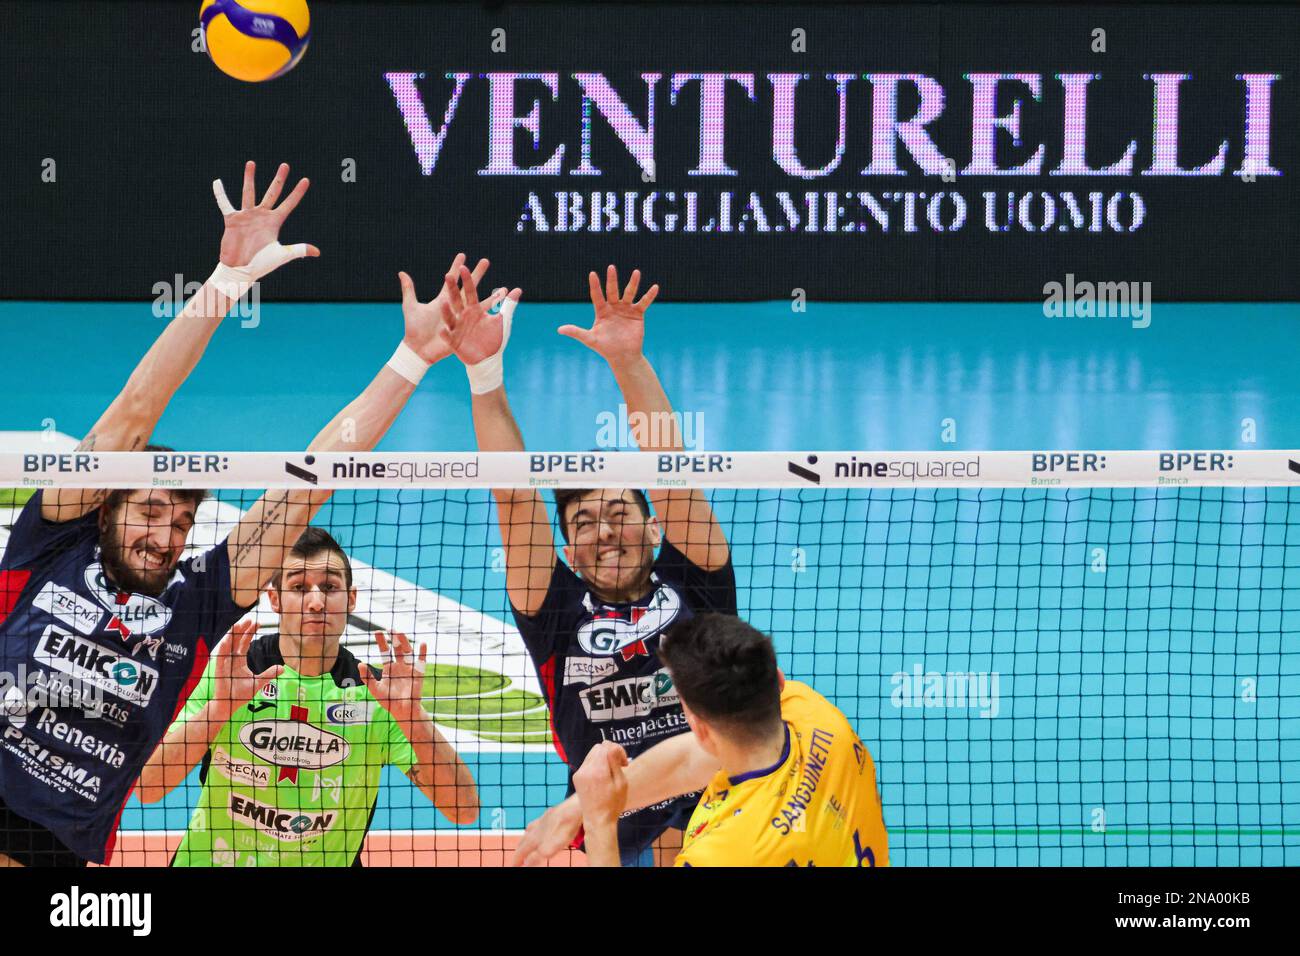 (Valsa Group Modène)(Gioiella Prisma Taranto) en action pendant le match du championnat italien SuperLega Volley saison 22/23 à Palapanini à Modène (Italie) Banque D'Images